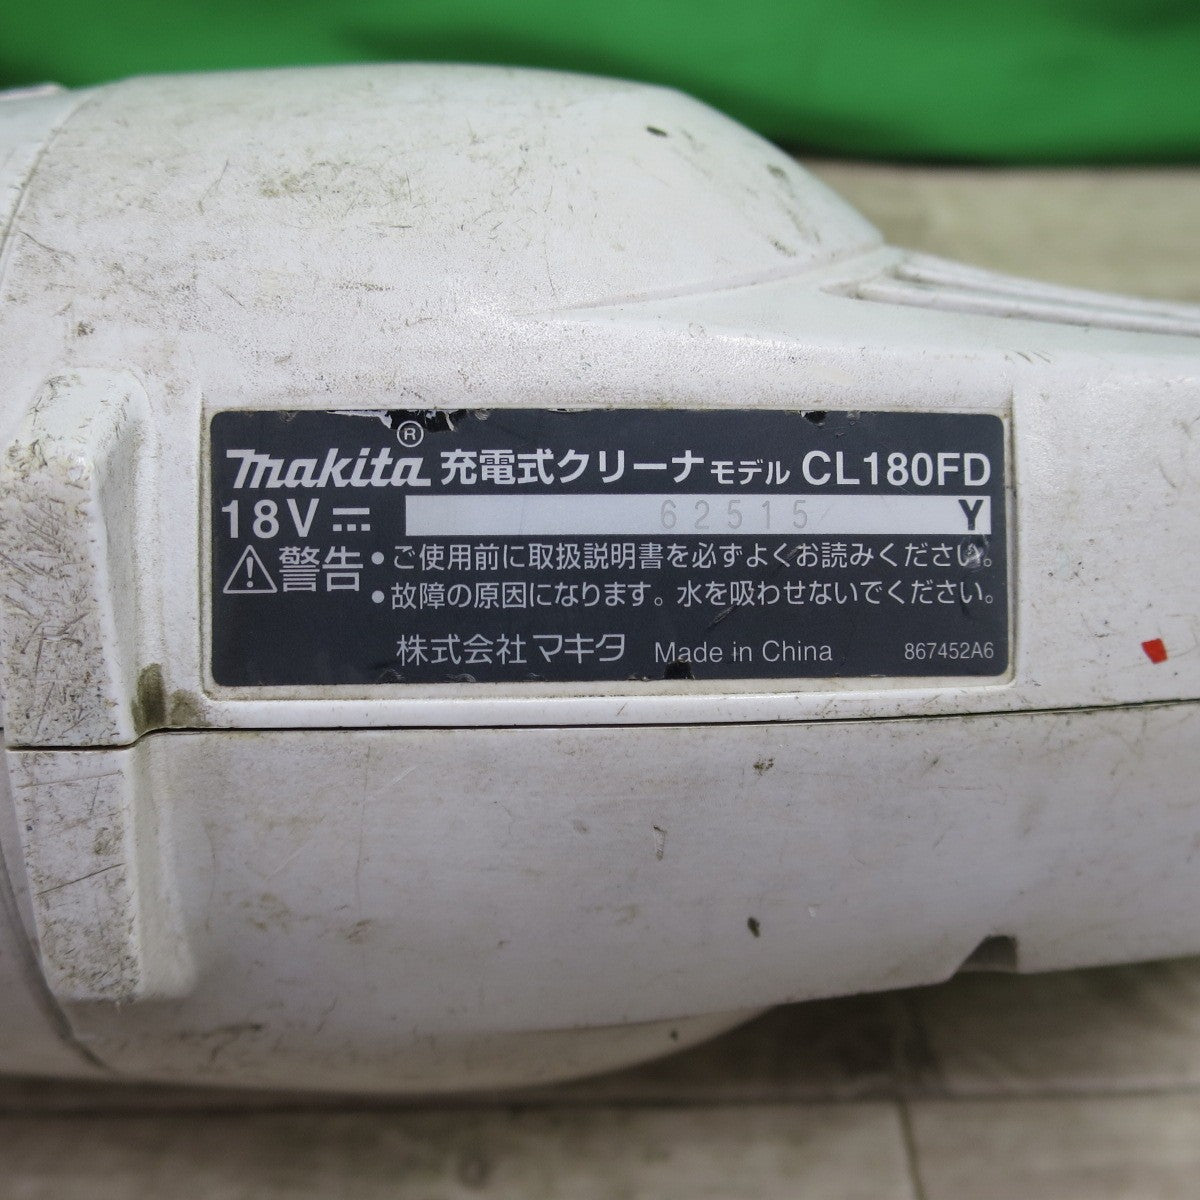 [送料無料] ☆makita マキタ 充電式クリーナー CL180FD 18V 掃除機 コードレス サイクロンアタッチメント セット A-67169  DIY 工具 道具☆